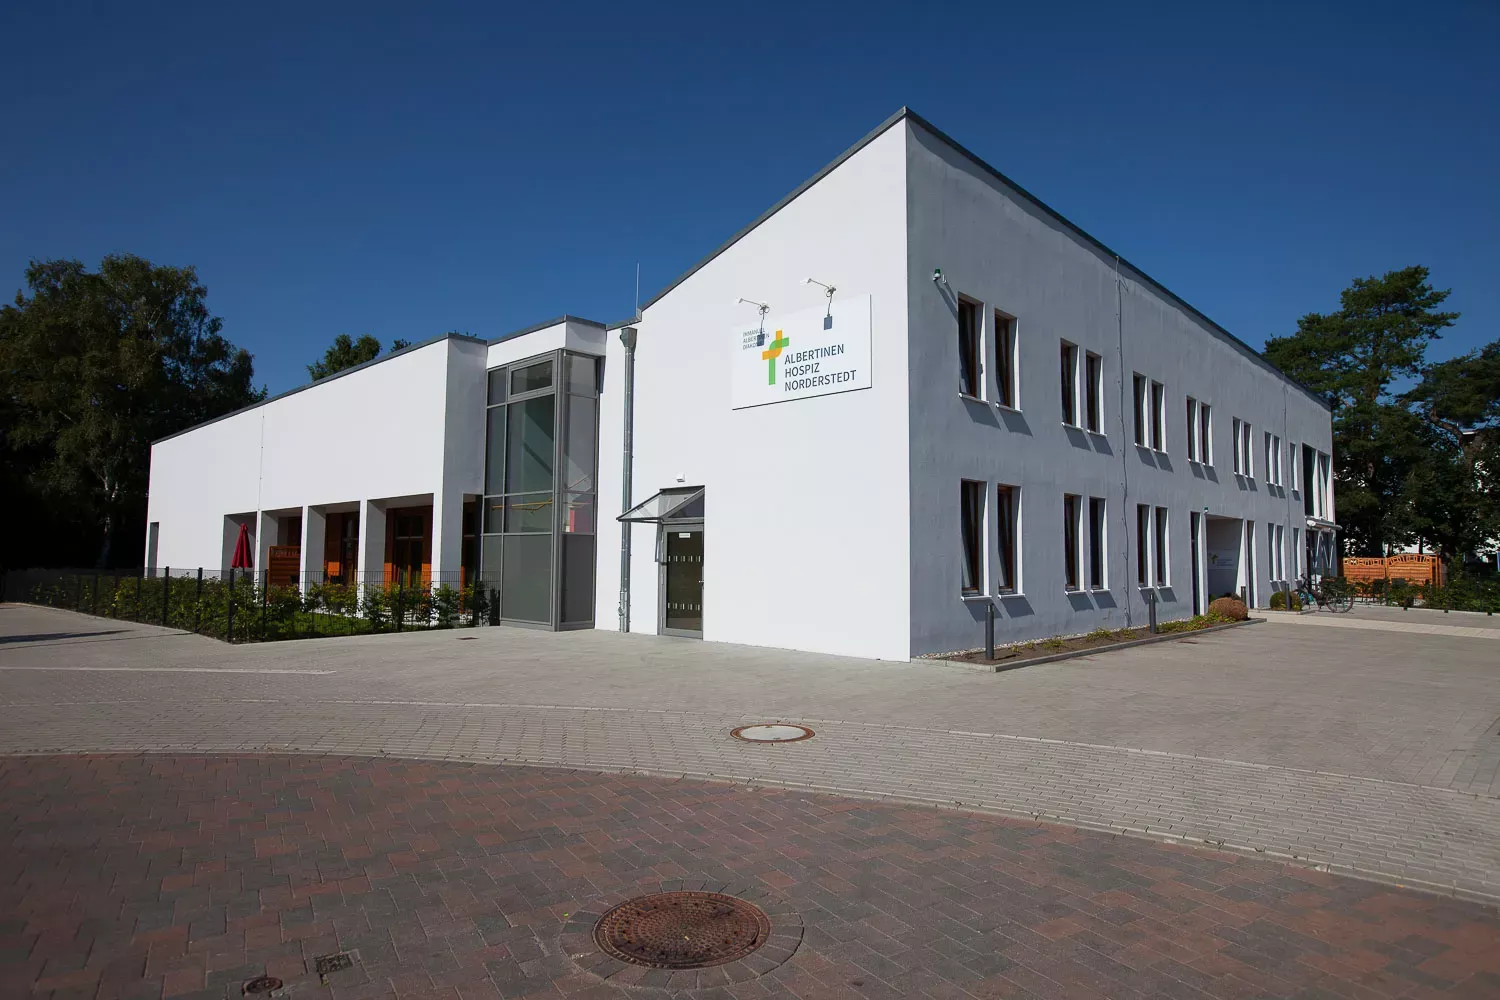 Manubau - Neubau Albertinen Hospiz in Norderstedt